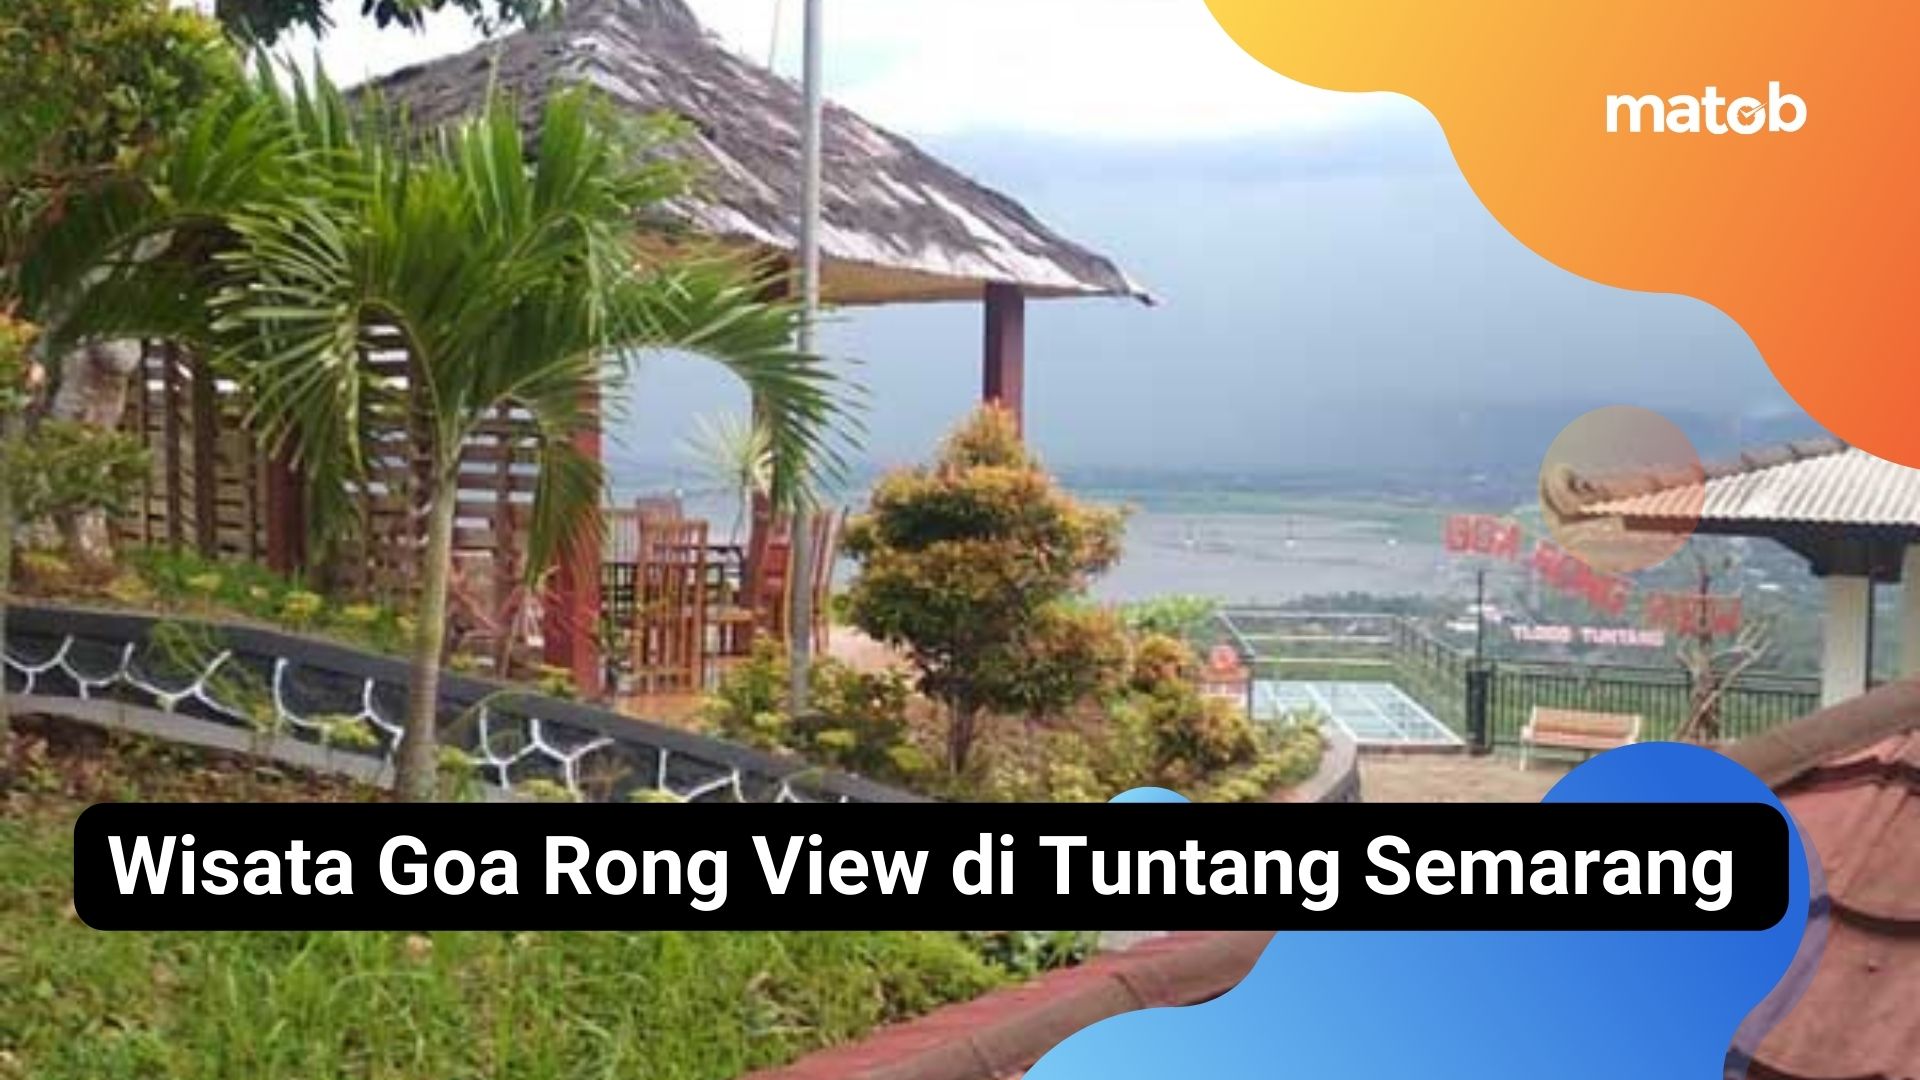 Wisata Goa Rong View di Tuntang Semarang